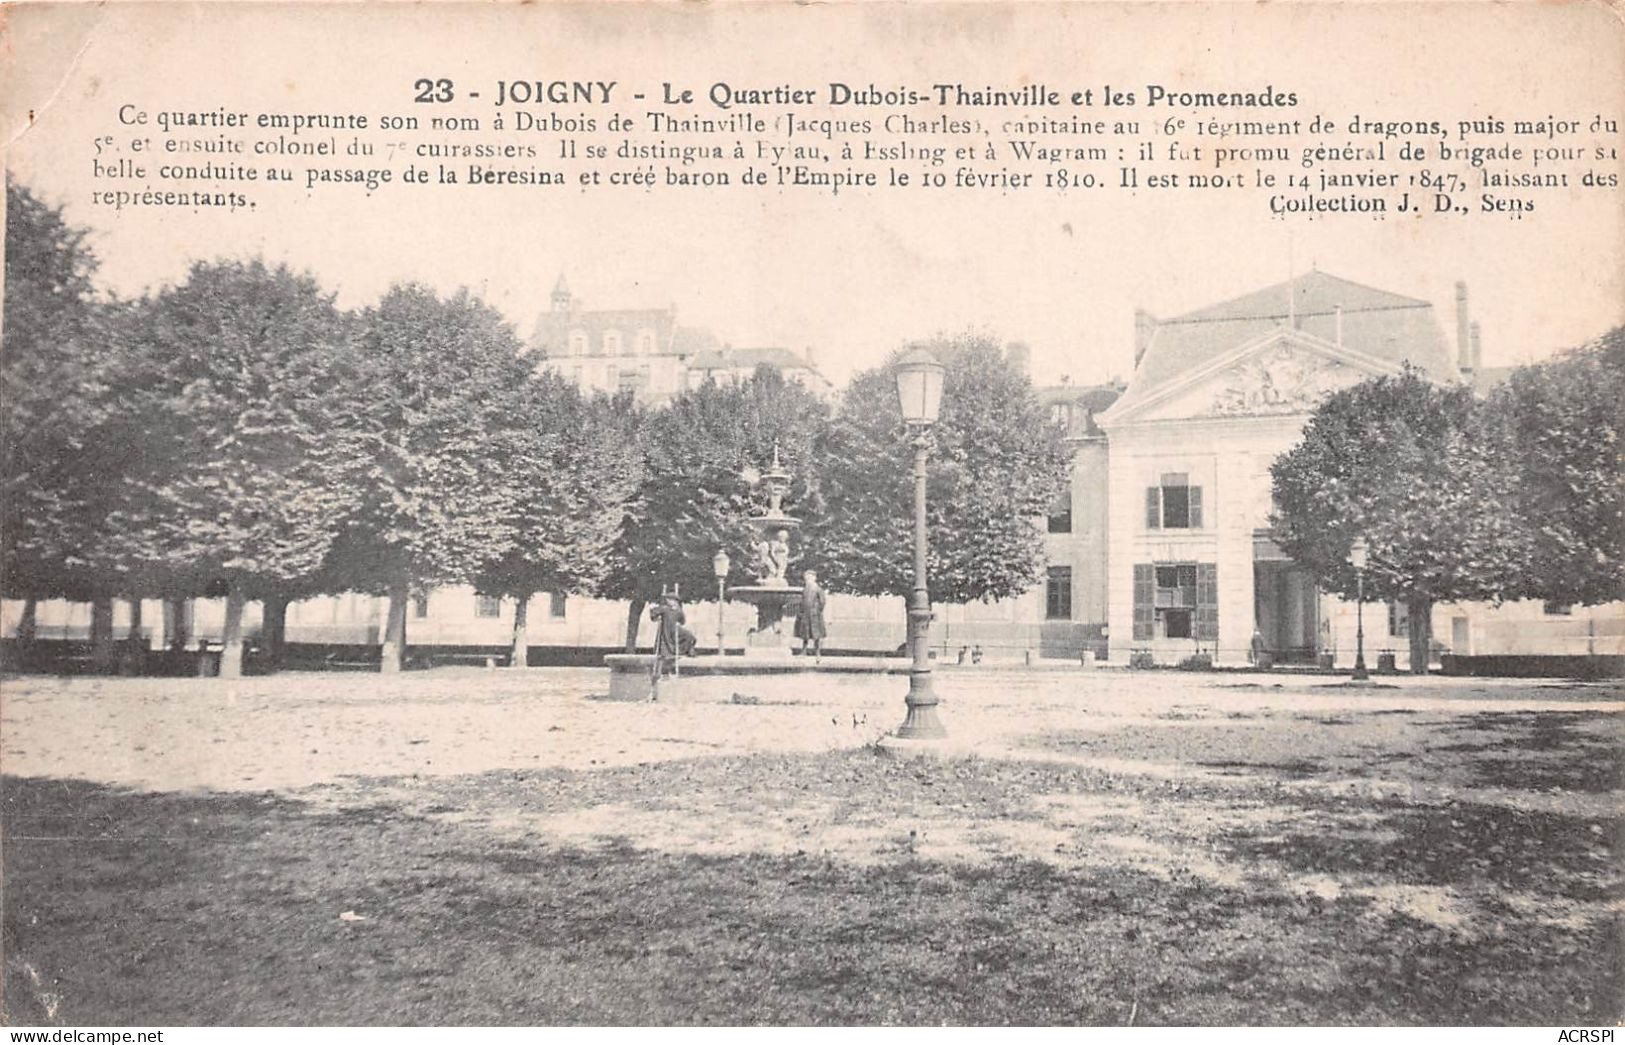 89 JOIGNY Le Quartier D'artillerie Dubois-Tainville  Et Les Promenades  (Scan R/V) N° 2 \MR8004 - Joigny